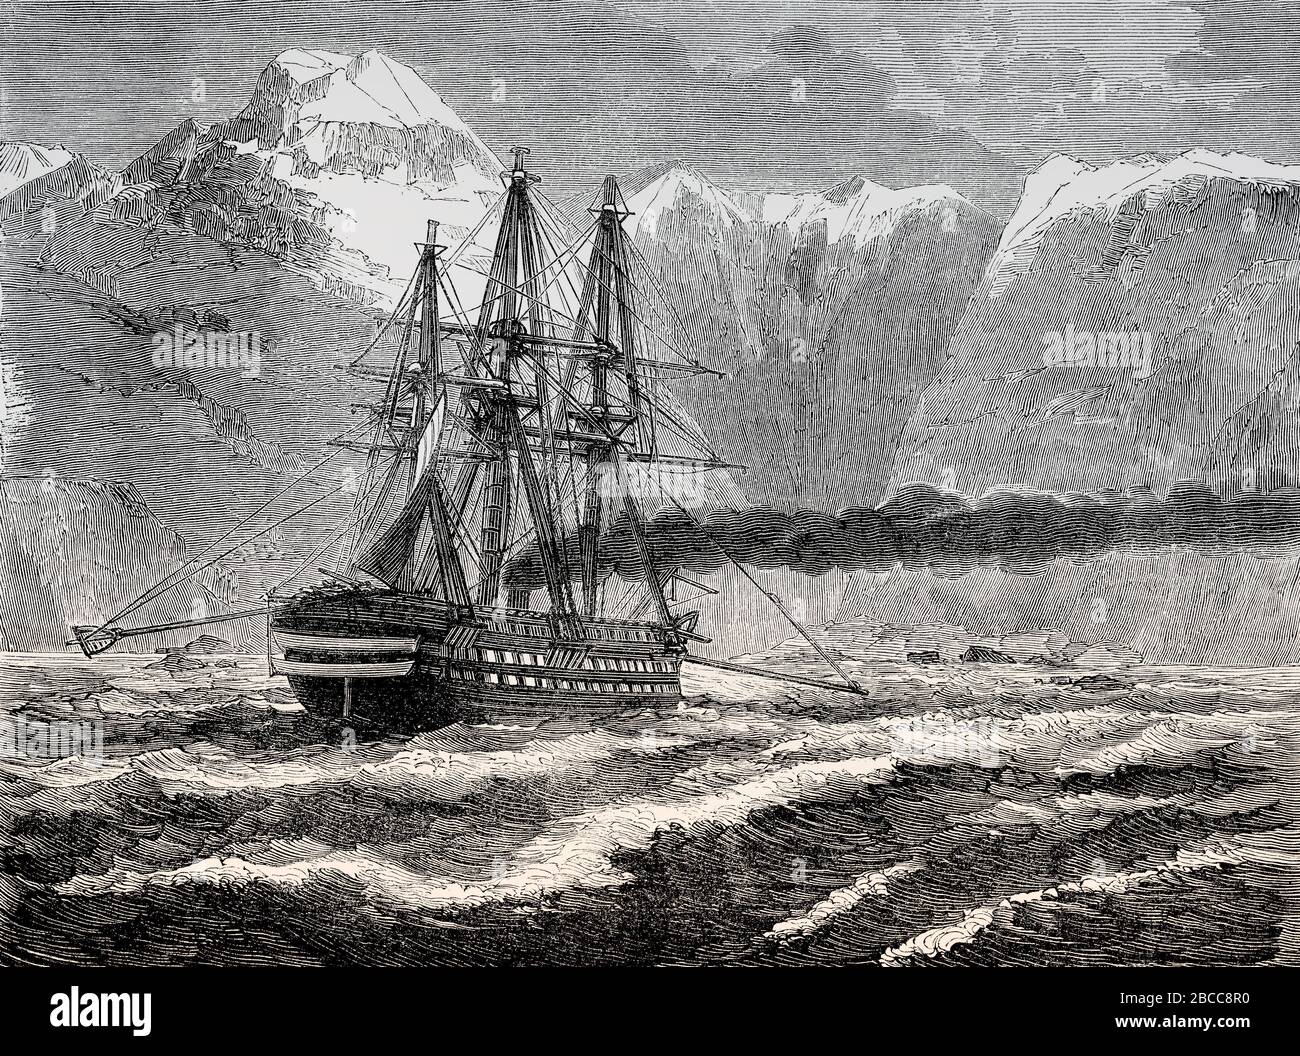 Das französische Schiff Bayard, das mit seinen provisorischen Vorrichtungen ohne Oare manövriert, Strait of Magellan, das Jahr 1863 Stockfoto